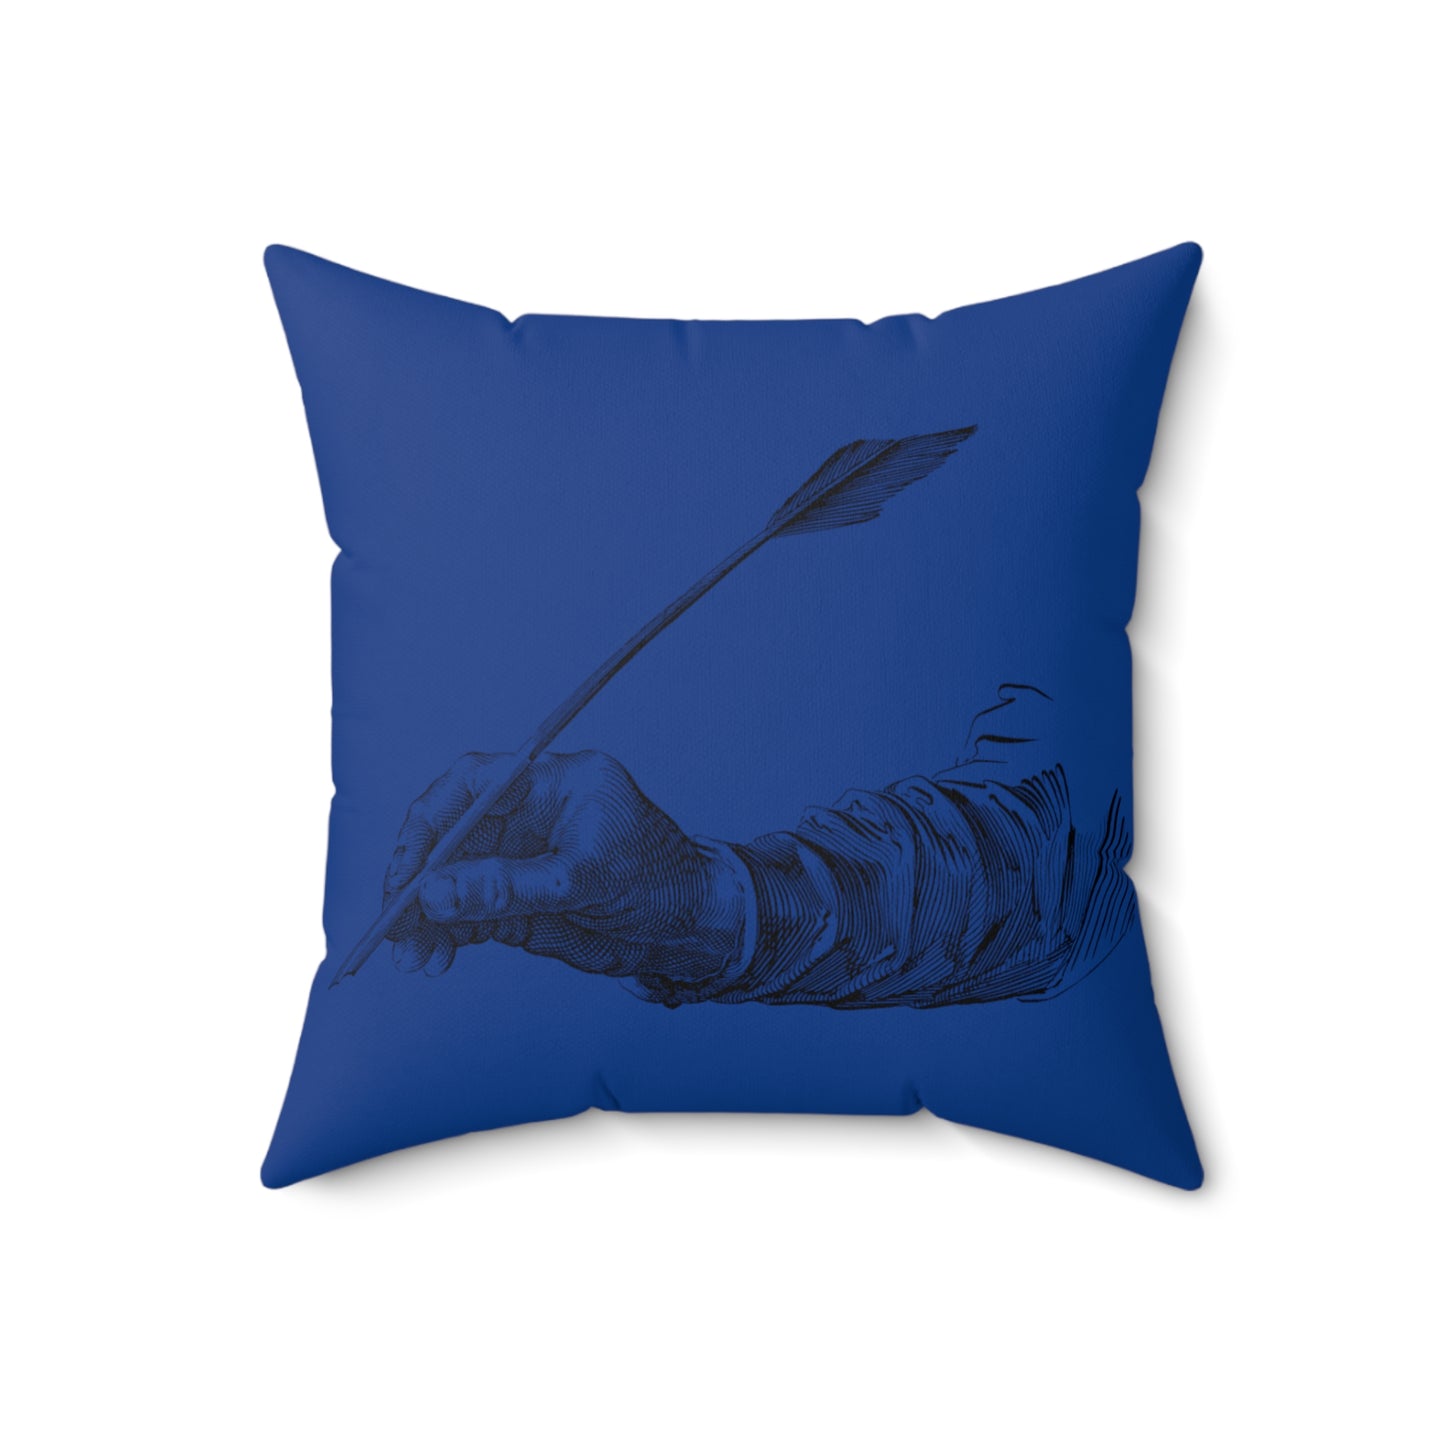 Spun Polyester Square Pillow: Writing Dark Blue